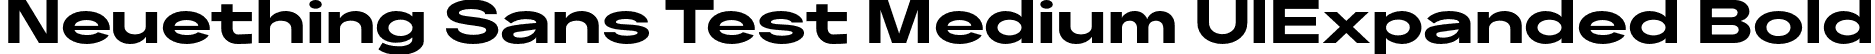 Neuething Sans Test Medium UlExpanded Bold font - NeuethingVariableTest-BoldUltraExpanded.otf